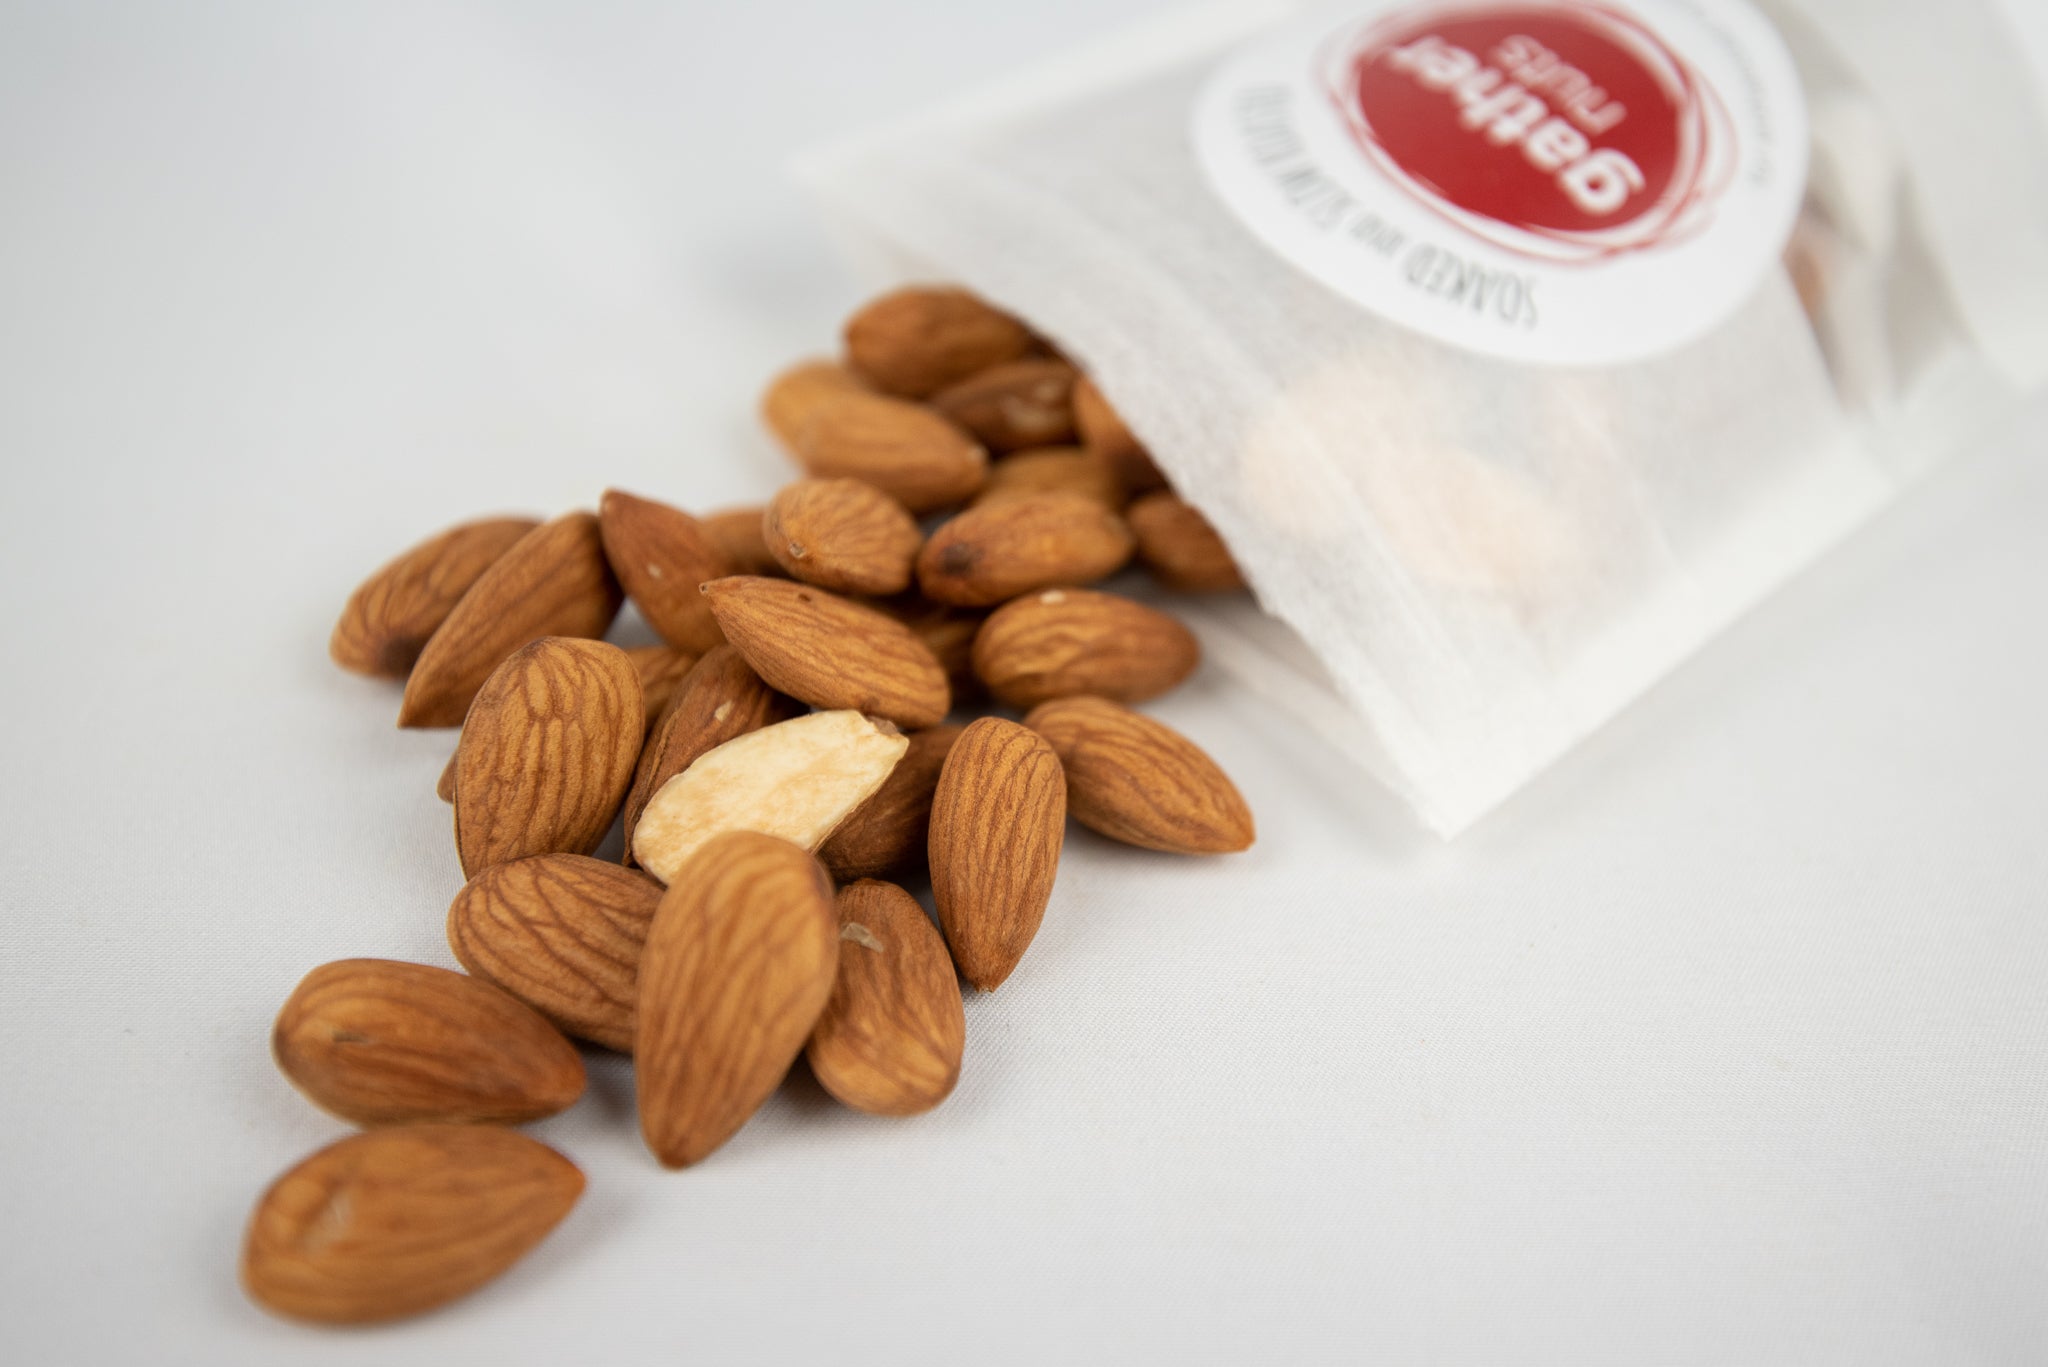 Simple Almonds